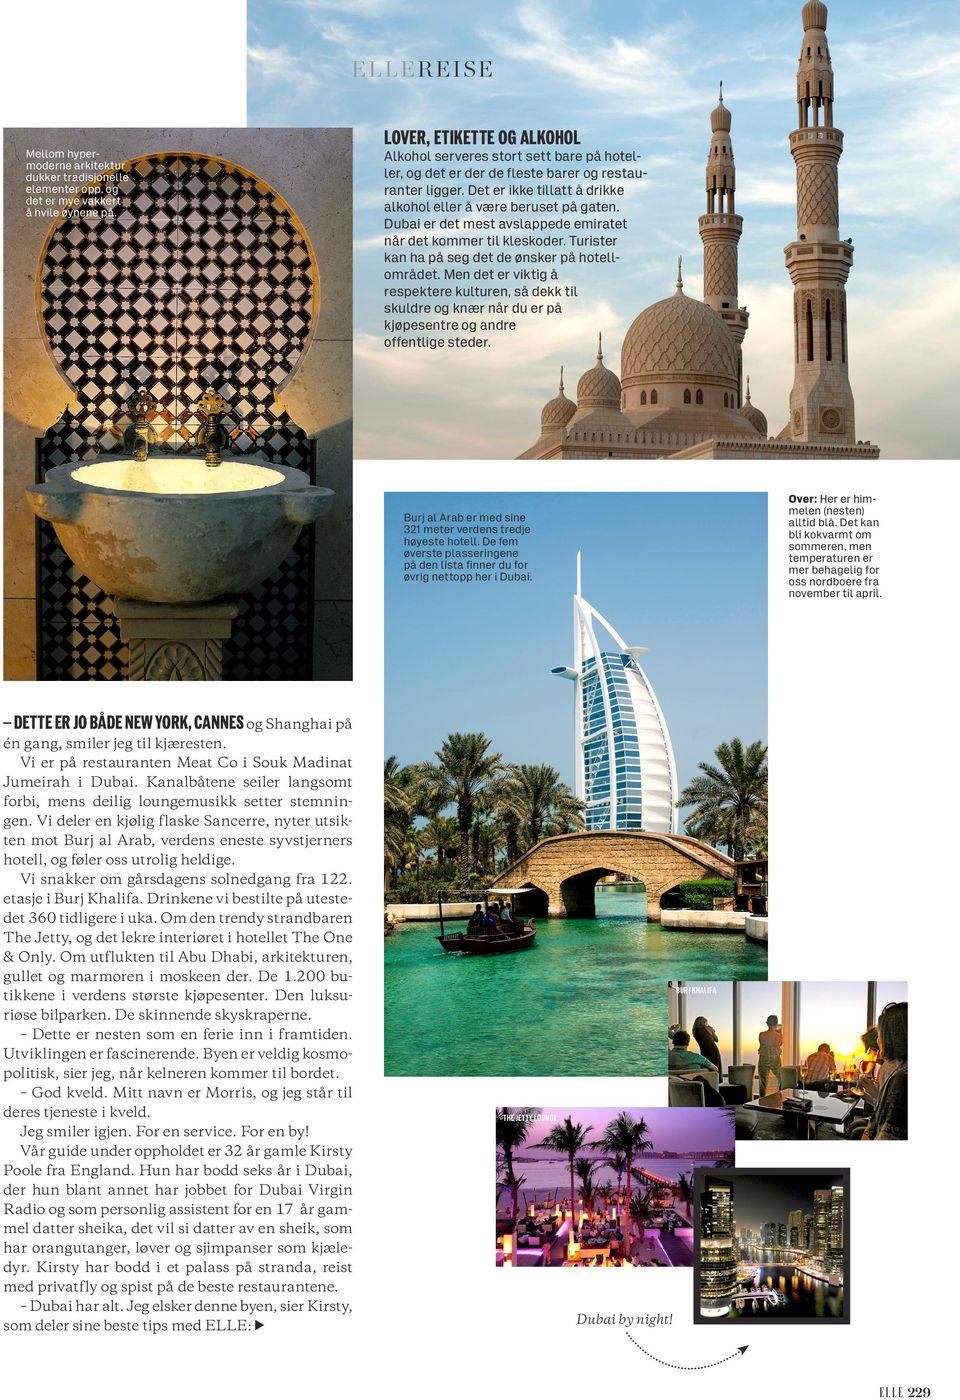 Dubai er det mest avslappede emiratet når det kommer til kleskoder. Turister kan ha på seg det de ønsker på hotell området.